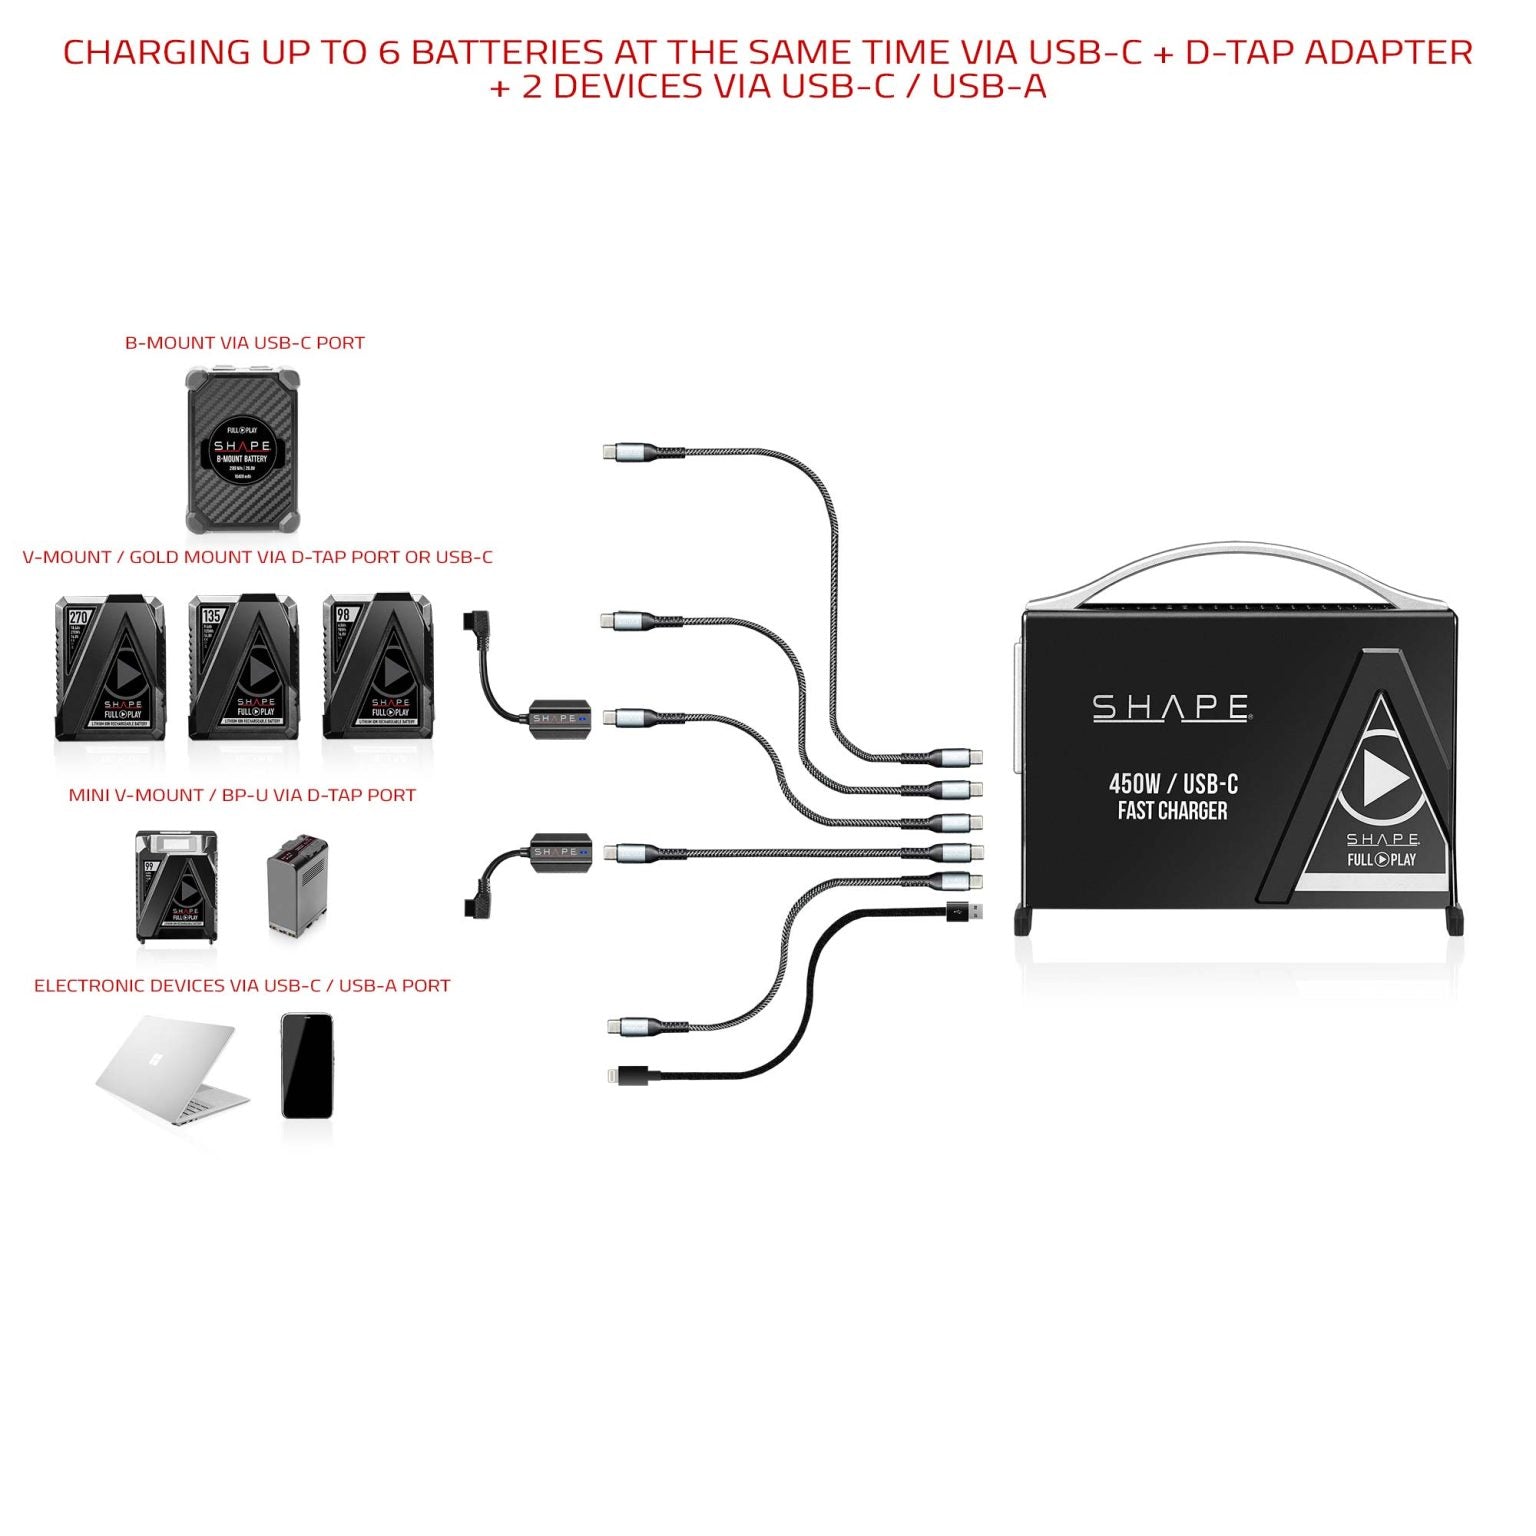 SHAPE Kit chargeur de batterie rapide 450W USB-C